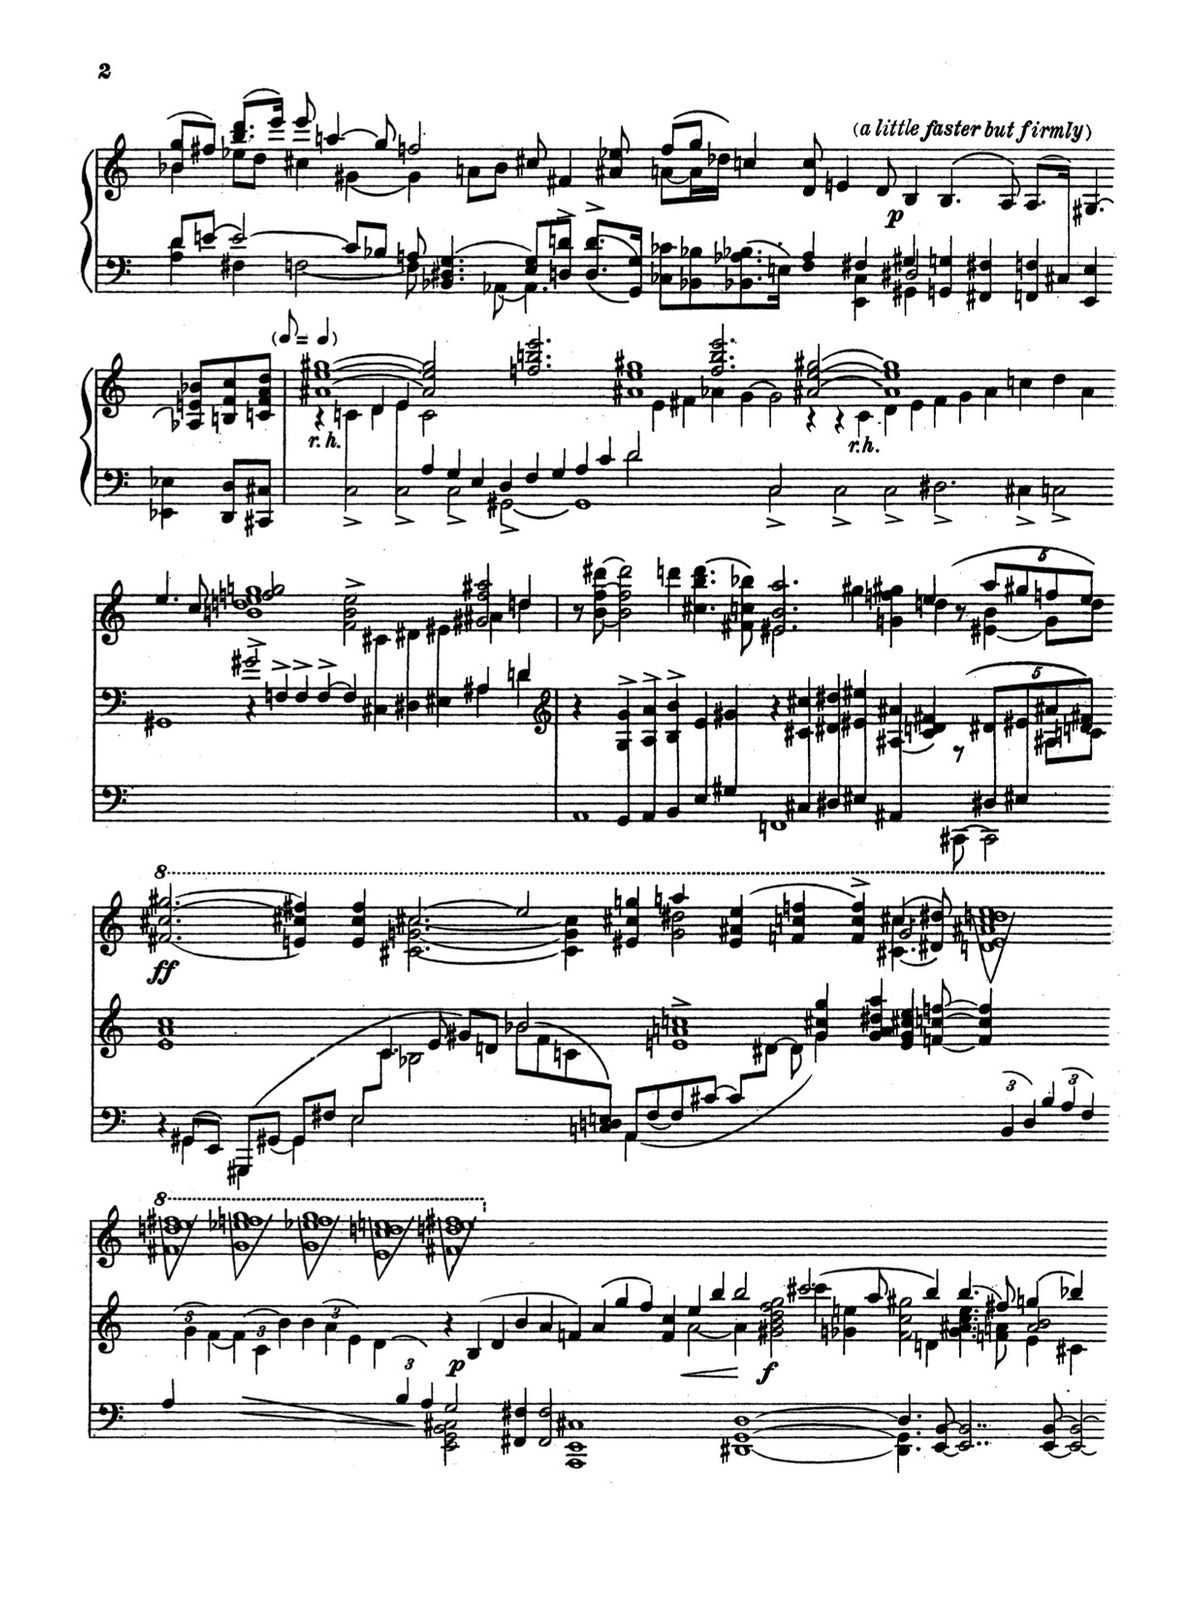 Ives, Piano Sonata No.2 ‘Concord, Mass., 1840–60’-p04